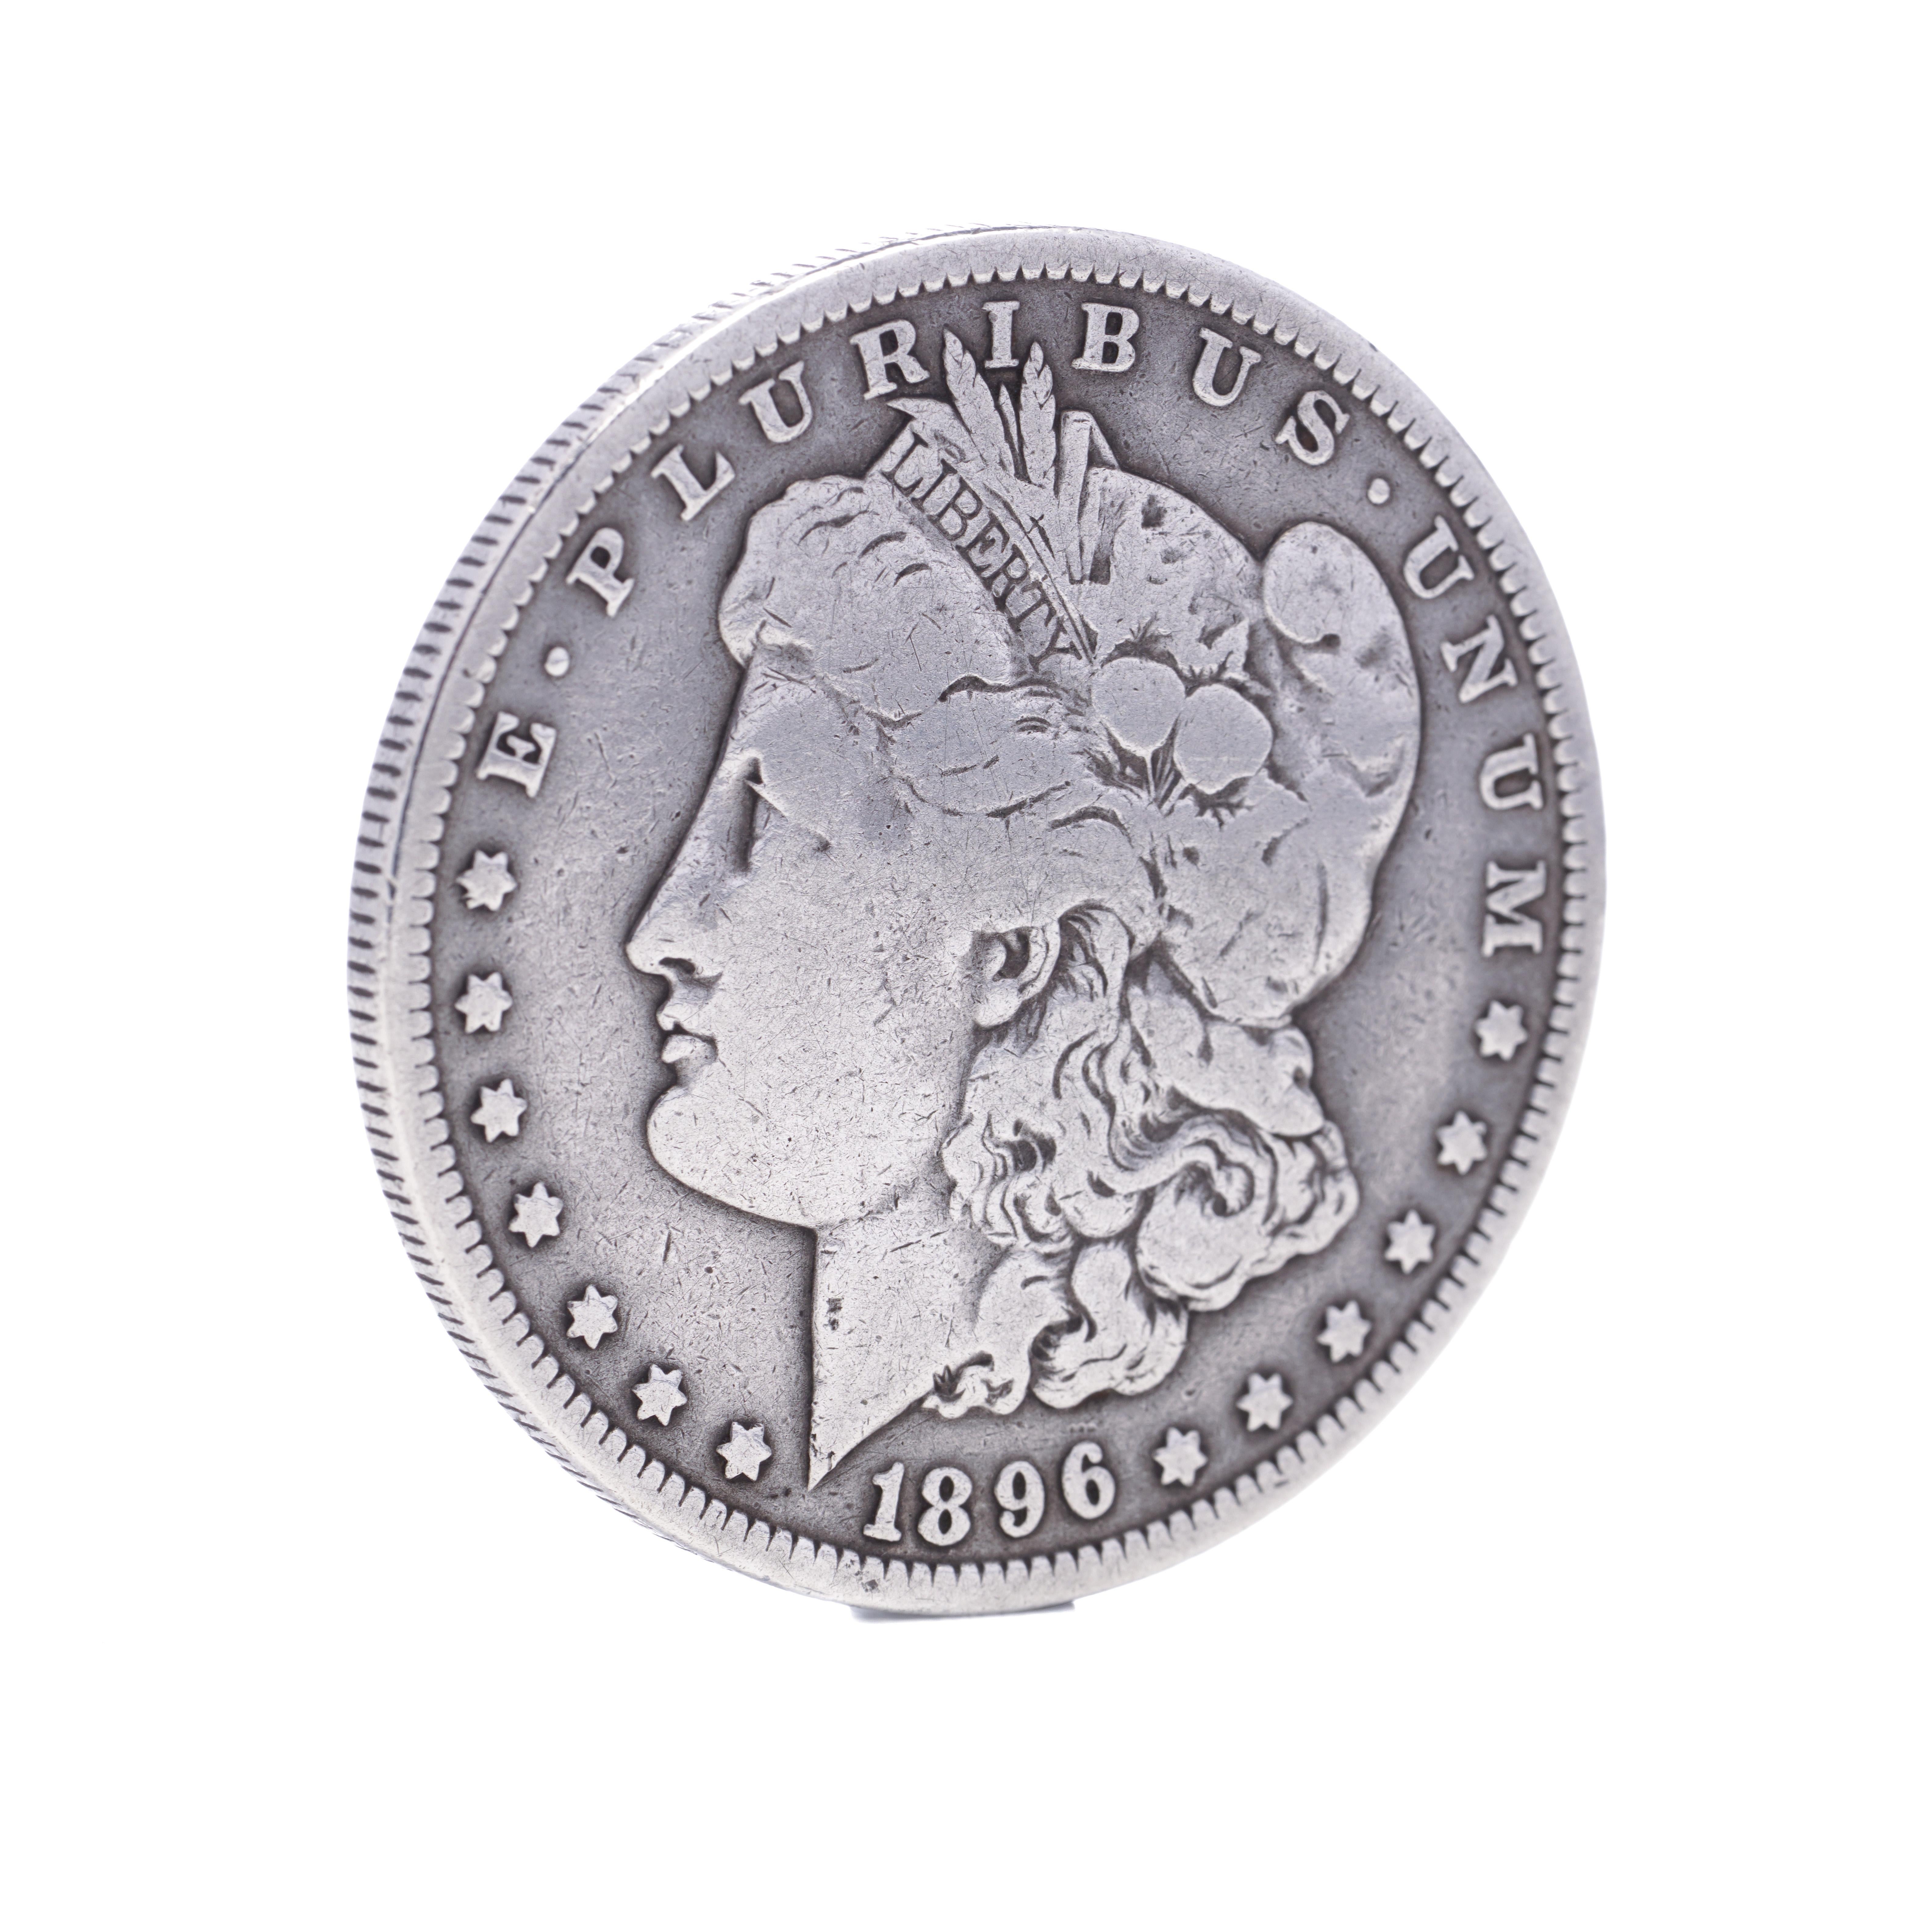 Ancien dollar Morgan de 1896
Titre de l'argent : 900 
Fabriqué aux États-Unis, 1896
Monnaie de la Nouvelle-Orléans. 

1878 est la première année de la populaire série des dollars Morgan. 

Le dollar Morgan est l'une des pièces les plus célèbres de